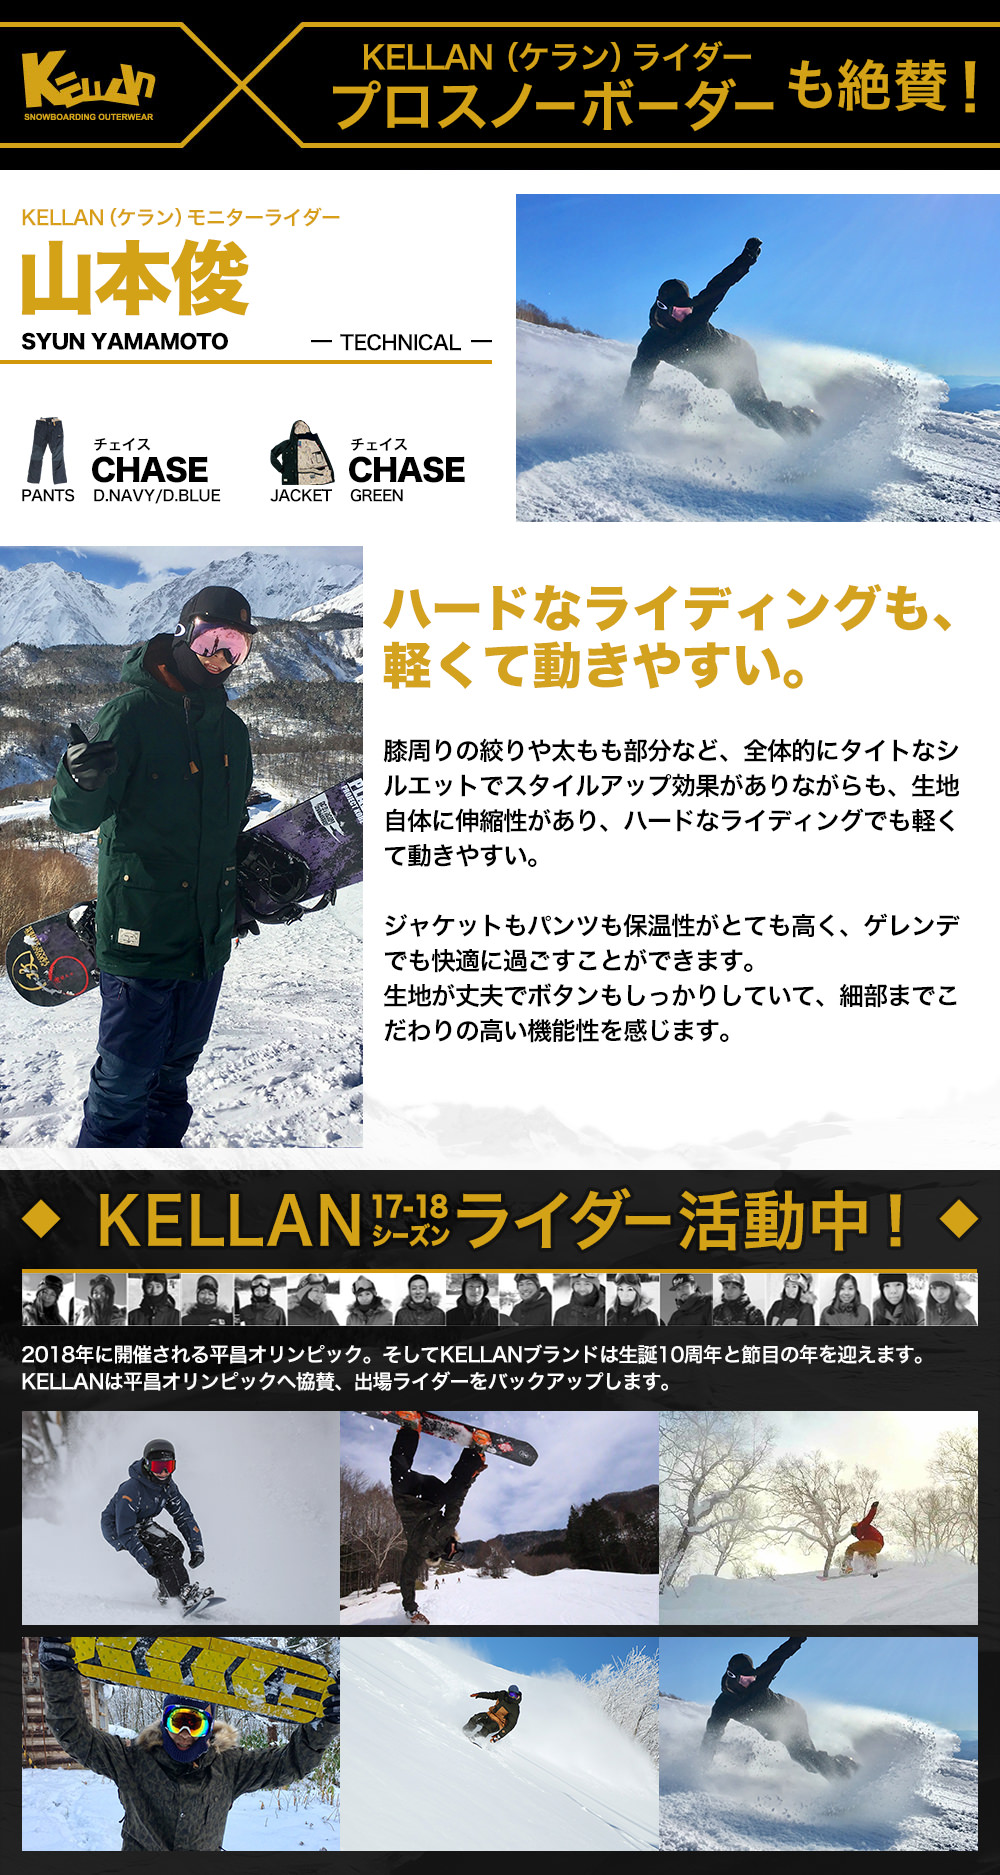 スノボ ウェア メンズ ケラン チェイスパンツ スノーボードウェア スキーウェア 大きいサイズ 耐水圧 KELLAN CHASE PNT 10202 送料無料